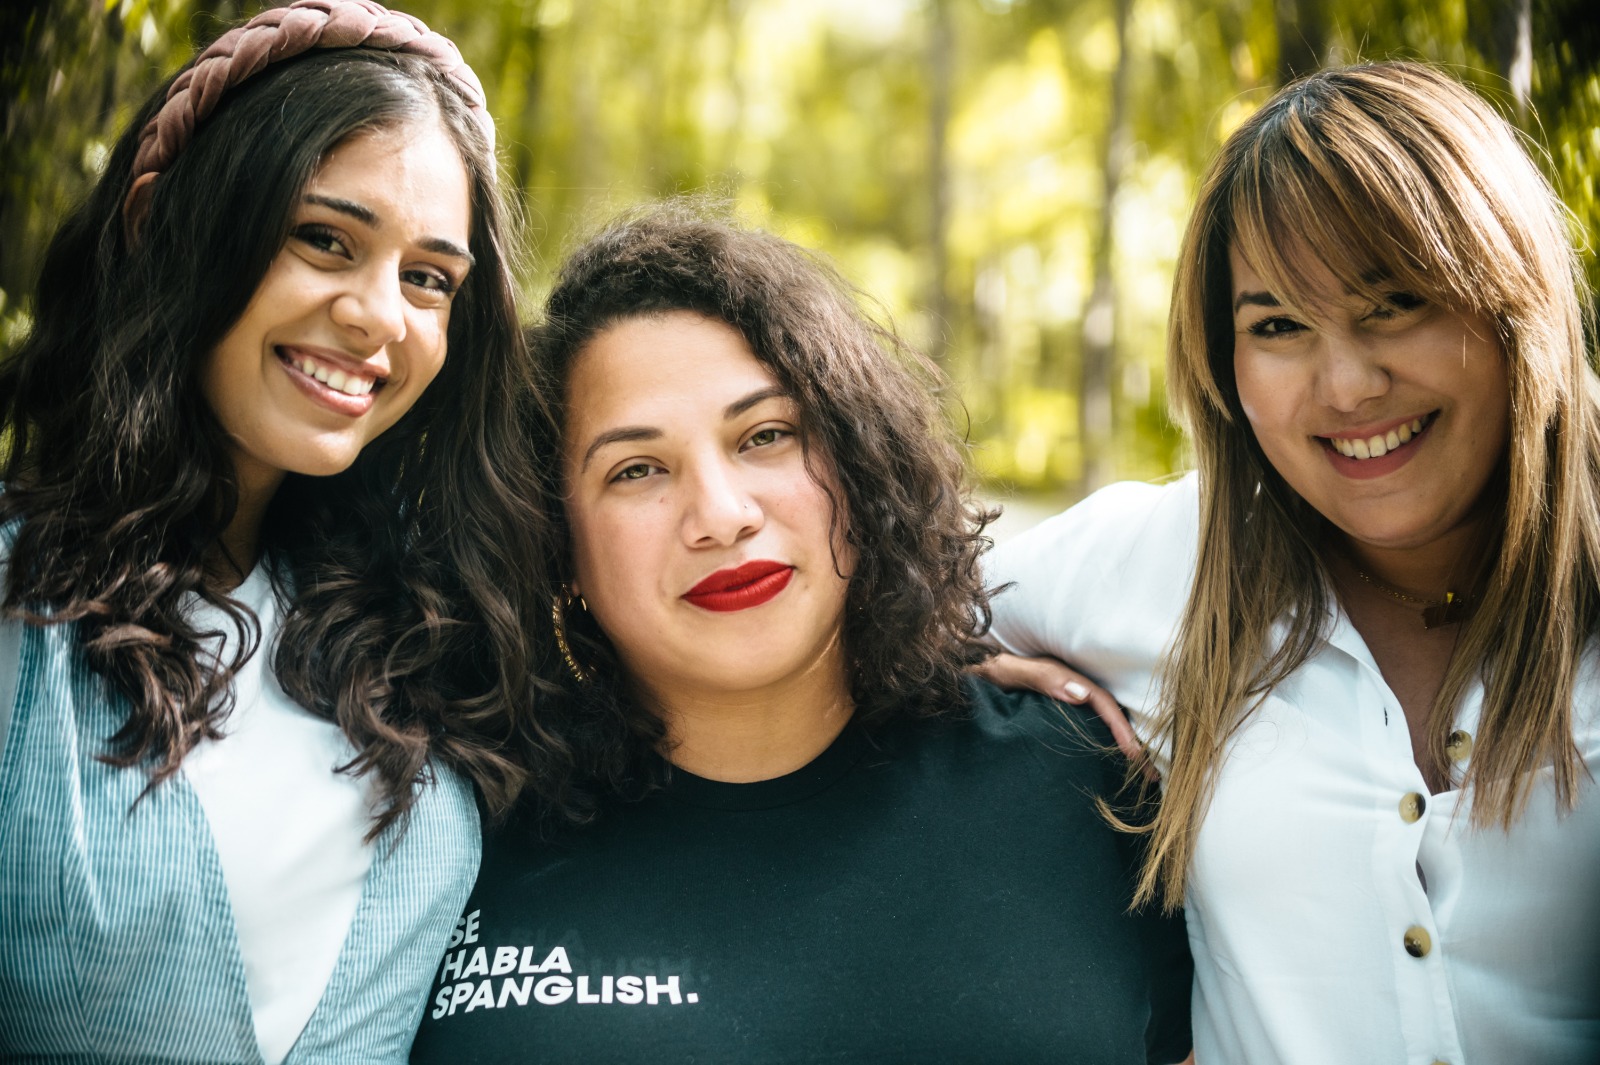 Tres puertorriqueñas conversan todos los sábados de feminismo, balance y justicia por La Mega 97.1 FM, en Orlando, Florida, en Jevas Combativas.